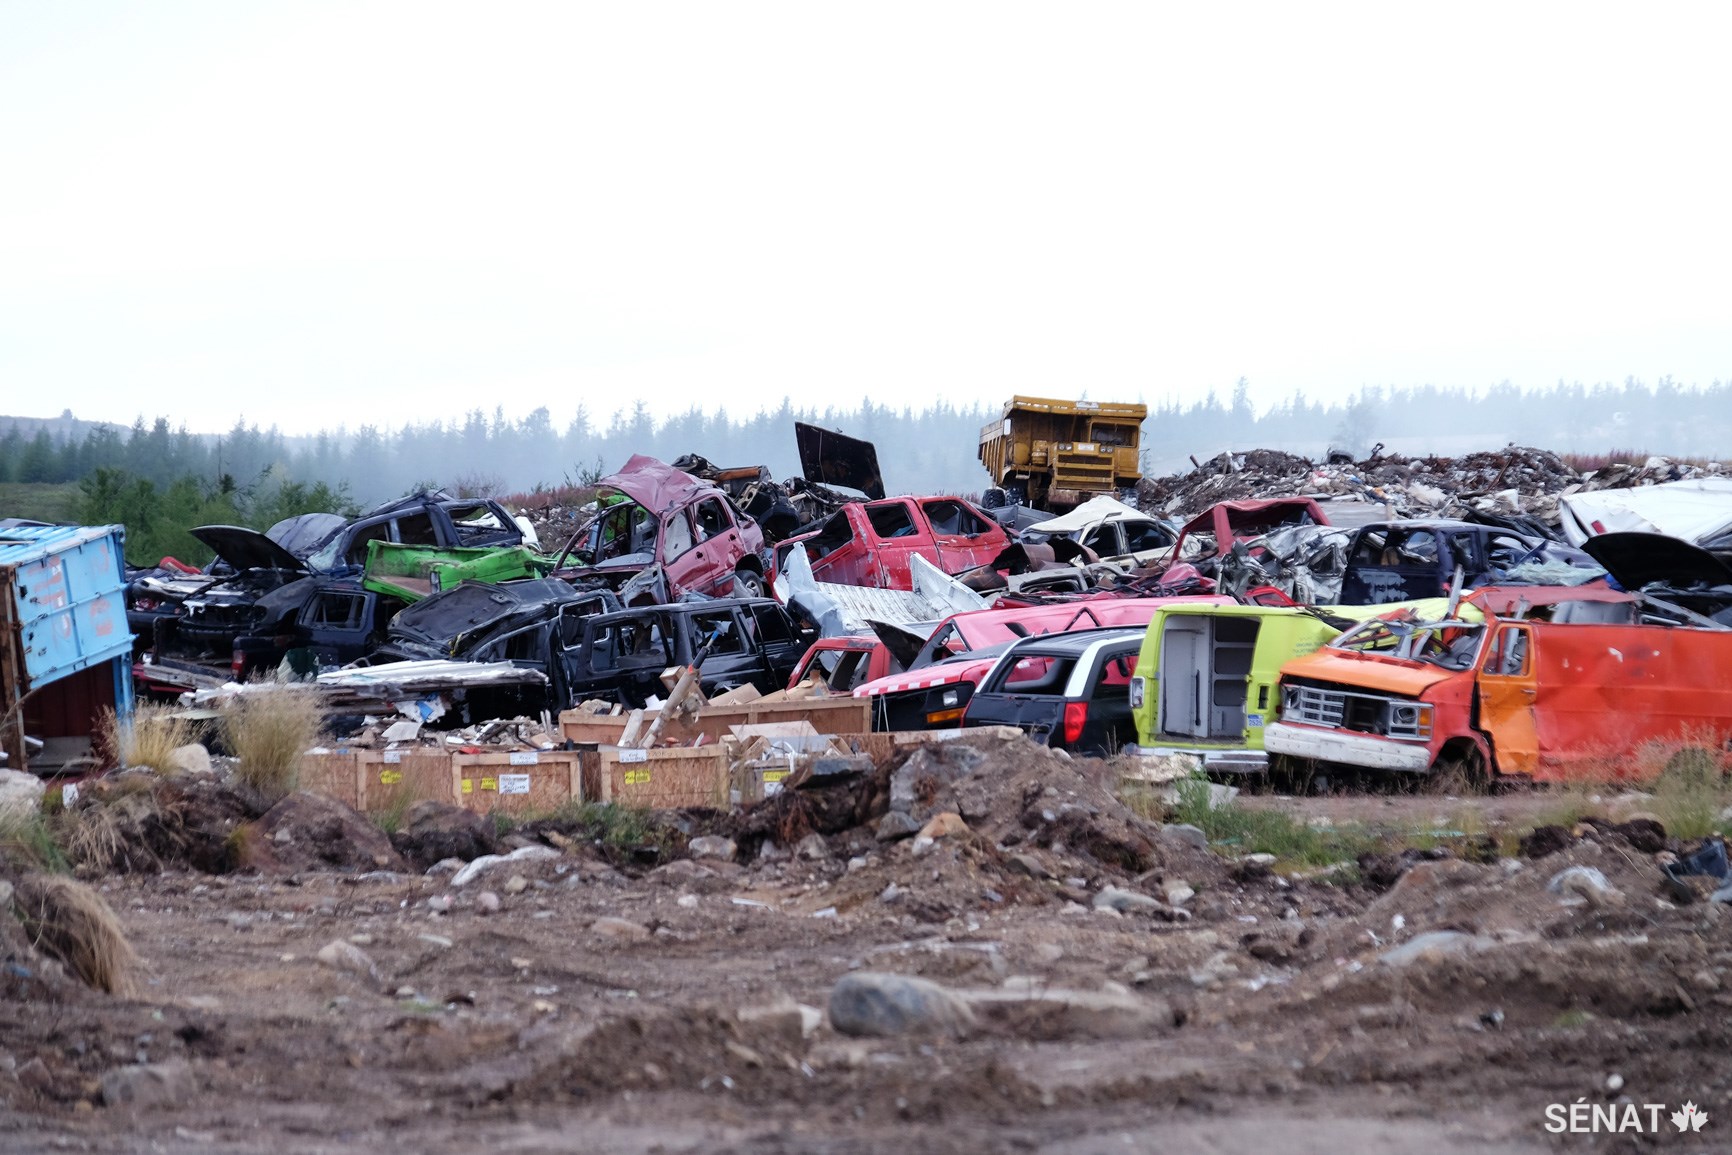 Des carcasses de véhicules gisent dans un dépotoir à Kuujjuaq. Cette décharge a été la première au Nunavik à recevoir du financement du gouvernement fédéral pour le tri des déchets, mais l’expédition de métal à recycler est si coûteuse que ces épaves restent pour l’instant au dépotoir avec des ordures. La communauté réclame des fonds au gouvernement pour pouvoir brûler ces déchets et en tirer de l’énergie pour les bâtiments communautaires.